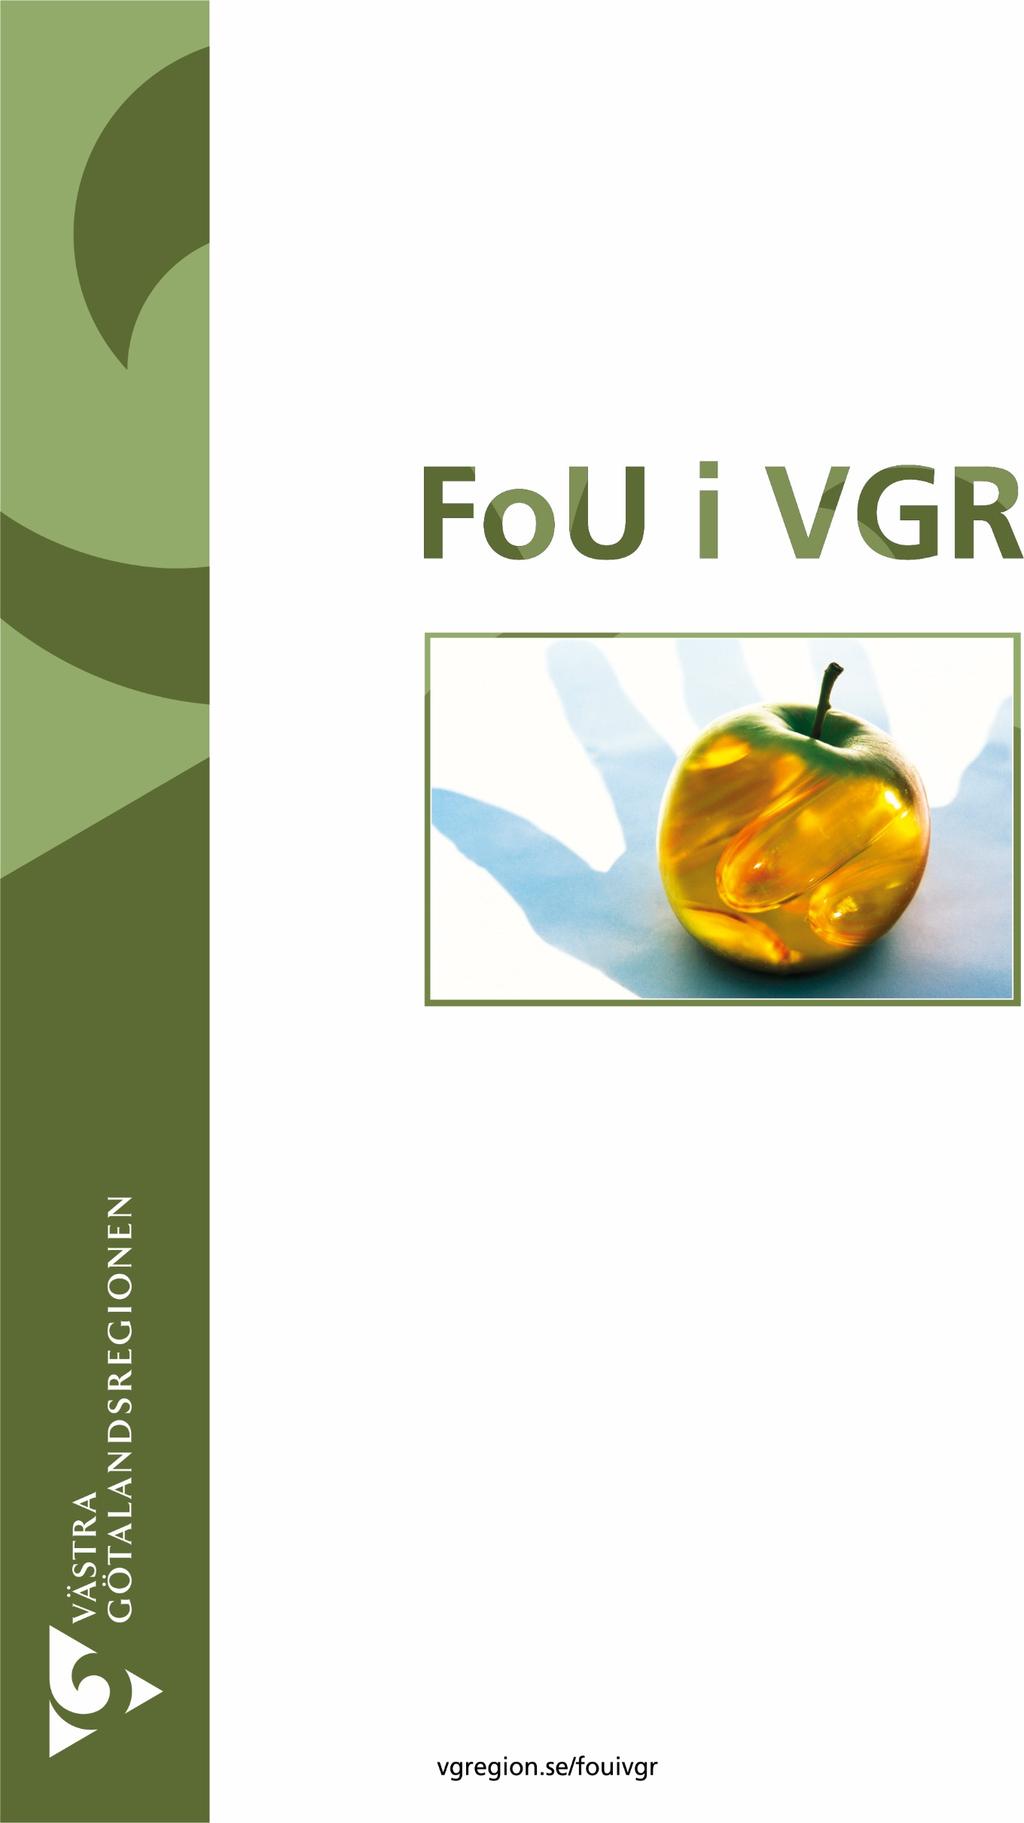 Manual för projektledare FoU i VGR är en databas innehållande Västra Götalandsregionens FoU-produktion: Forsknings-